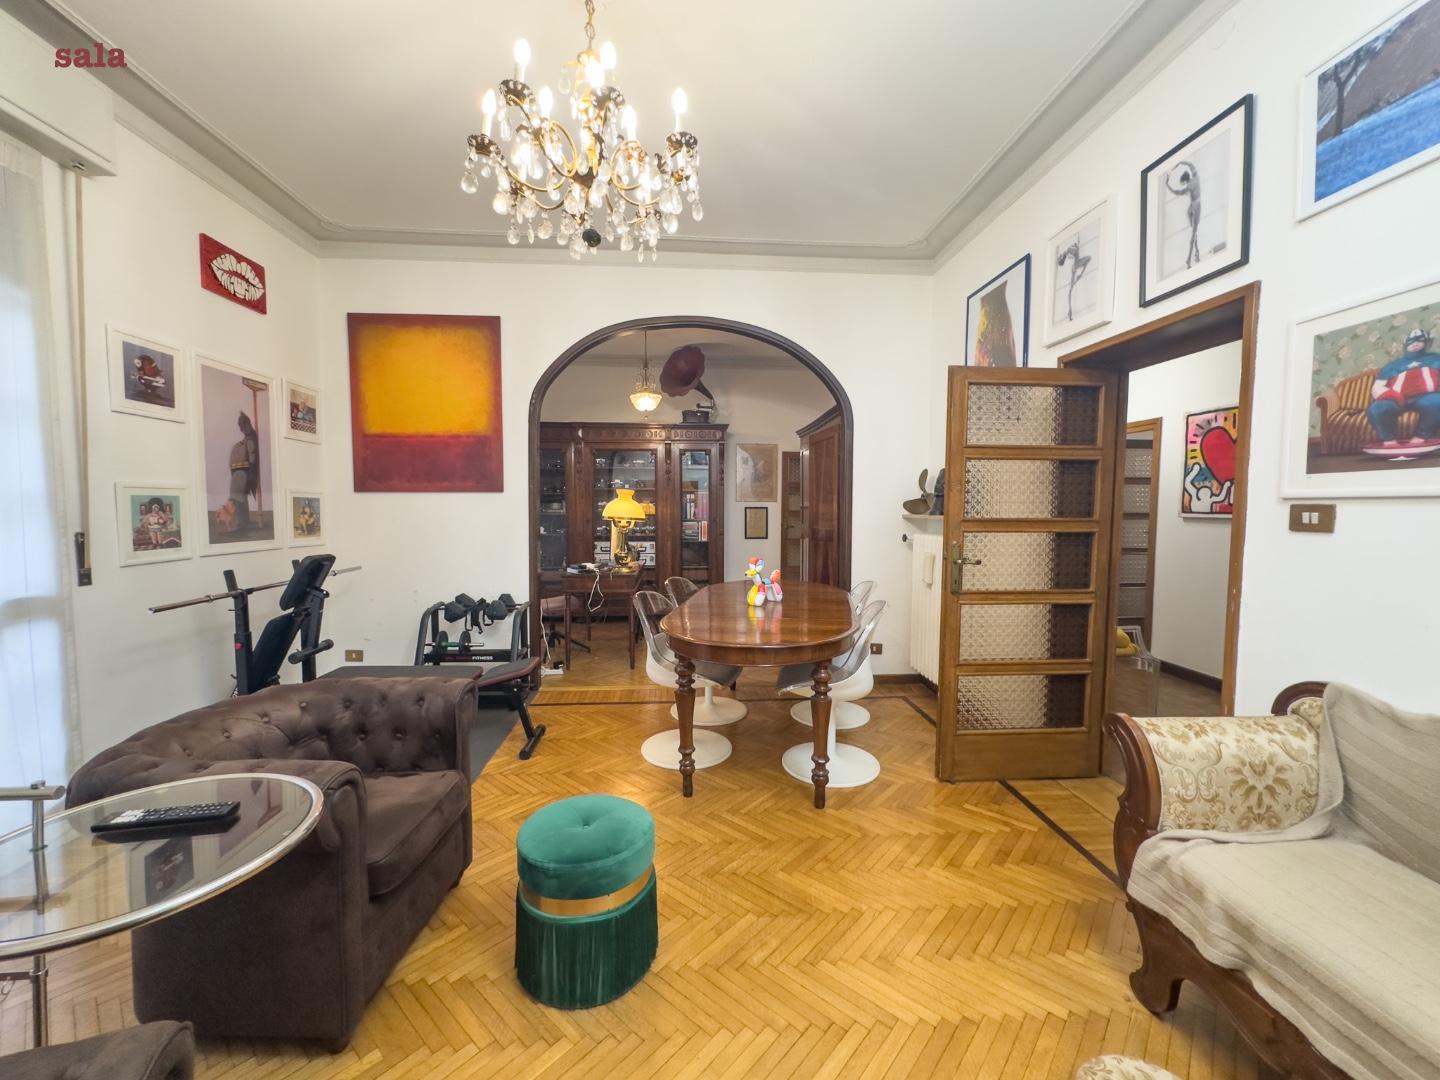 Apartment for sale in Reggio nell'Emilia